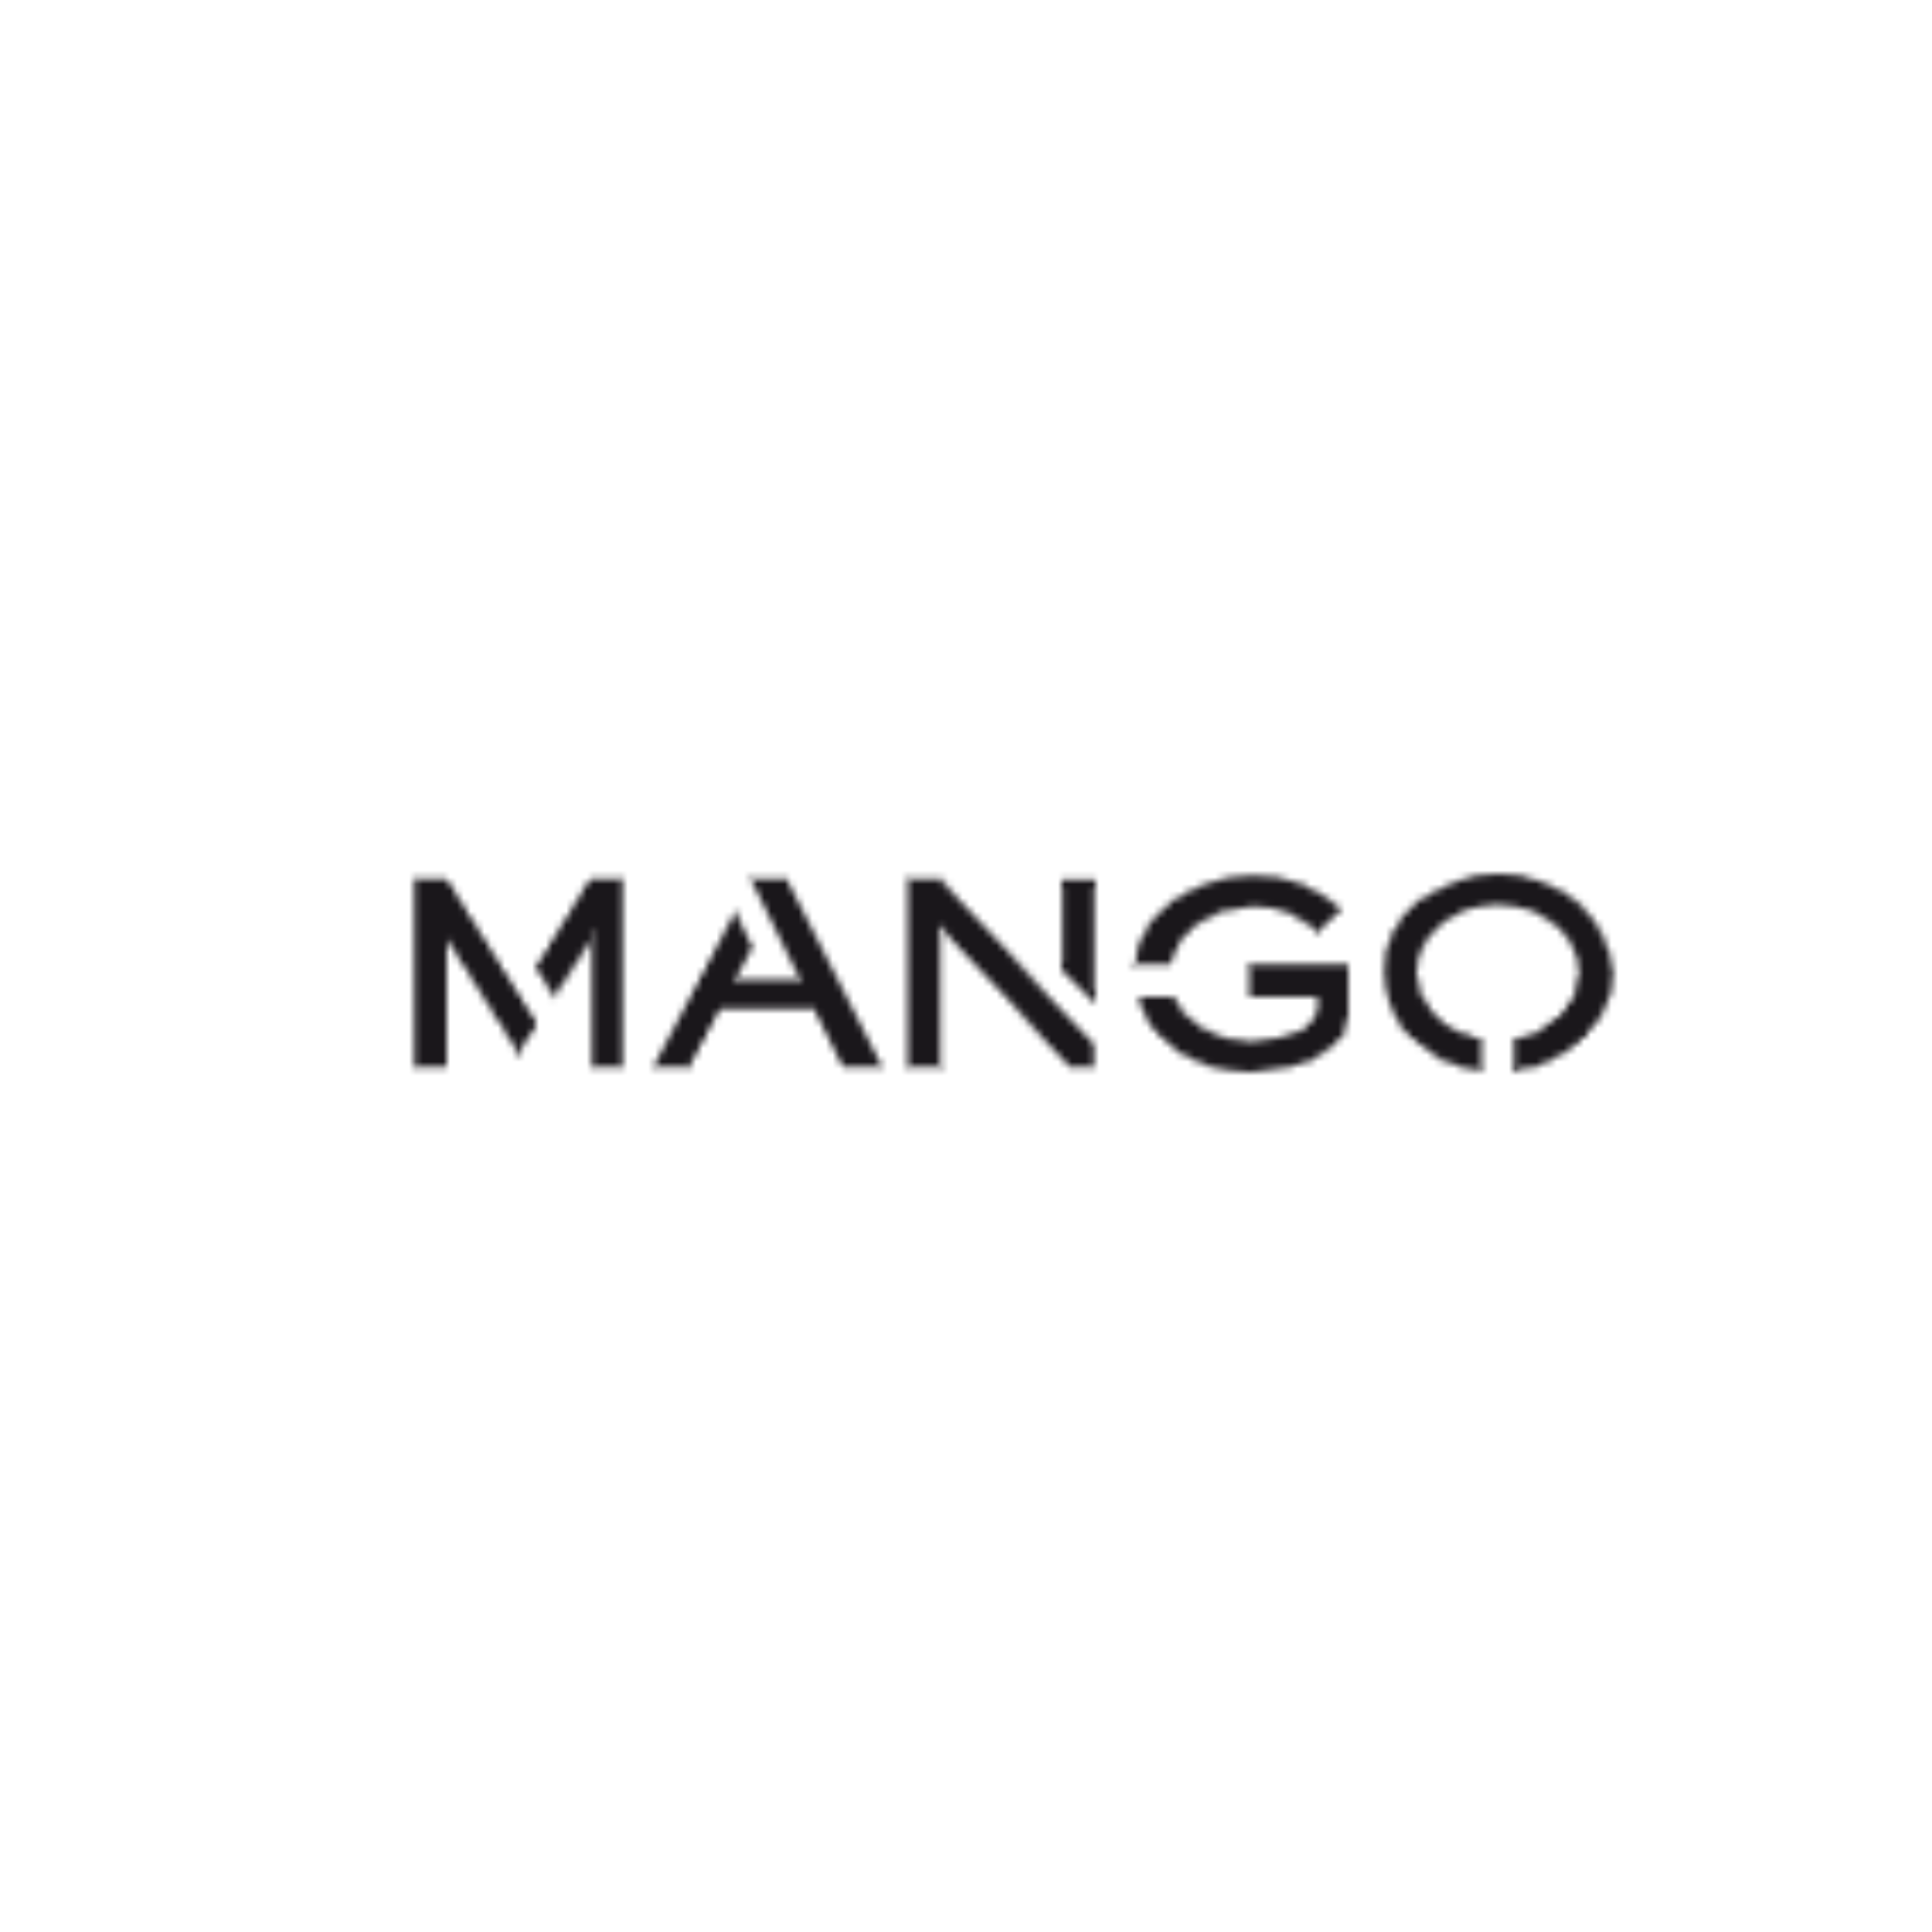 Mango Black Friday: UP TO 50% OFF!